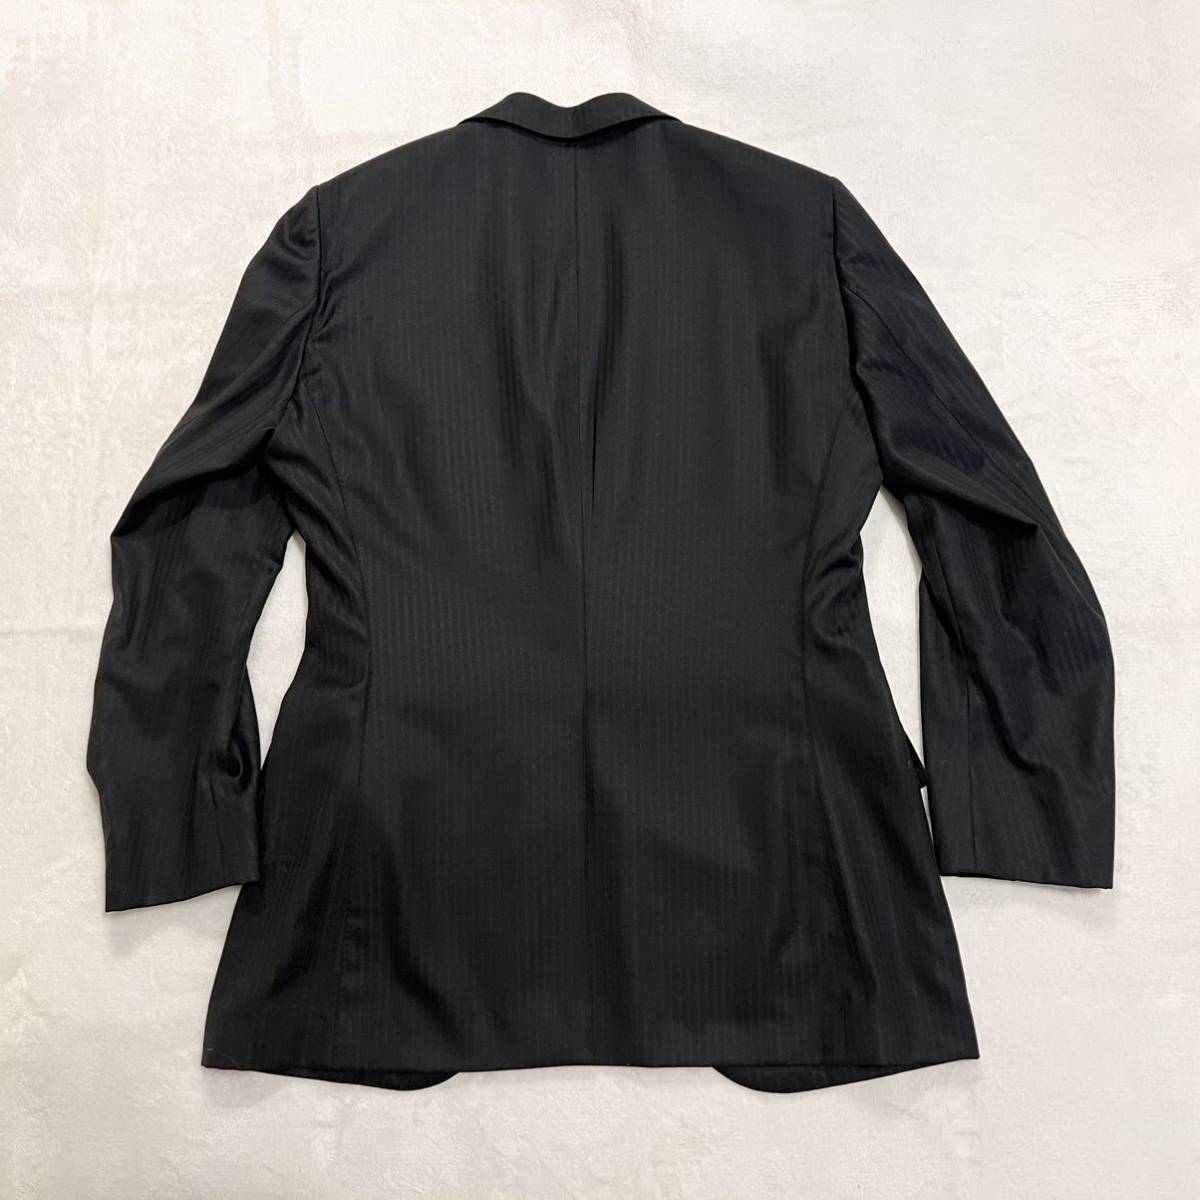 [ прекрасный товар ] Tomorrowland × Loro Piana выставить костюм шелк .2. кнопка общий обратная сторона черный книга@ порез перо большой размер размер 50 XL